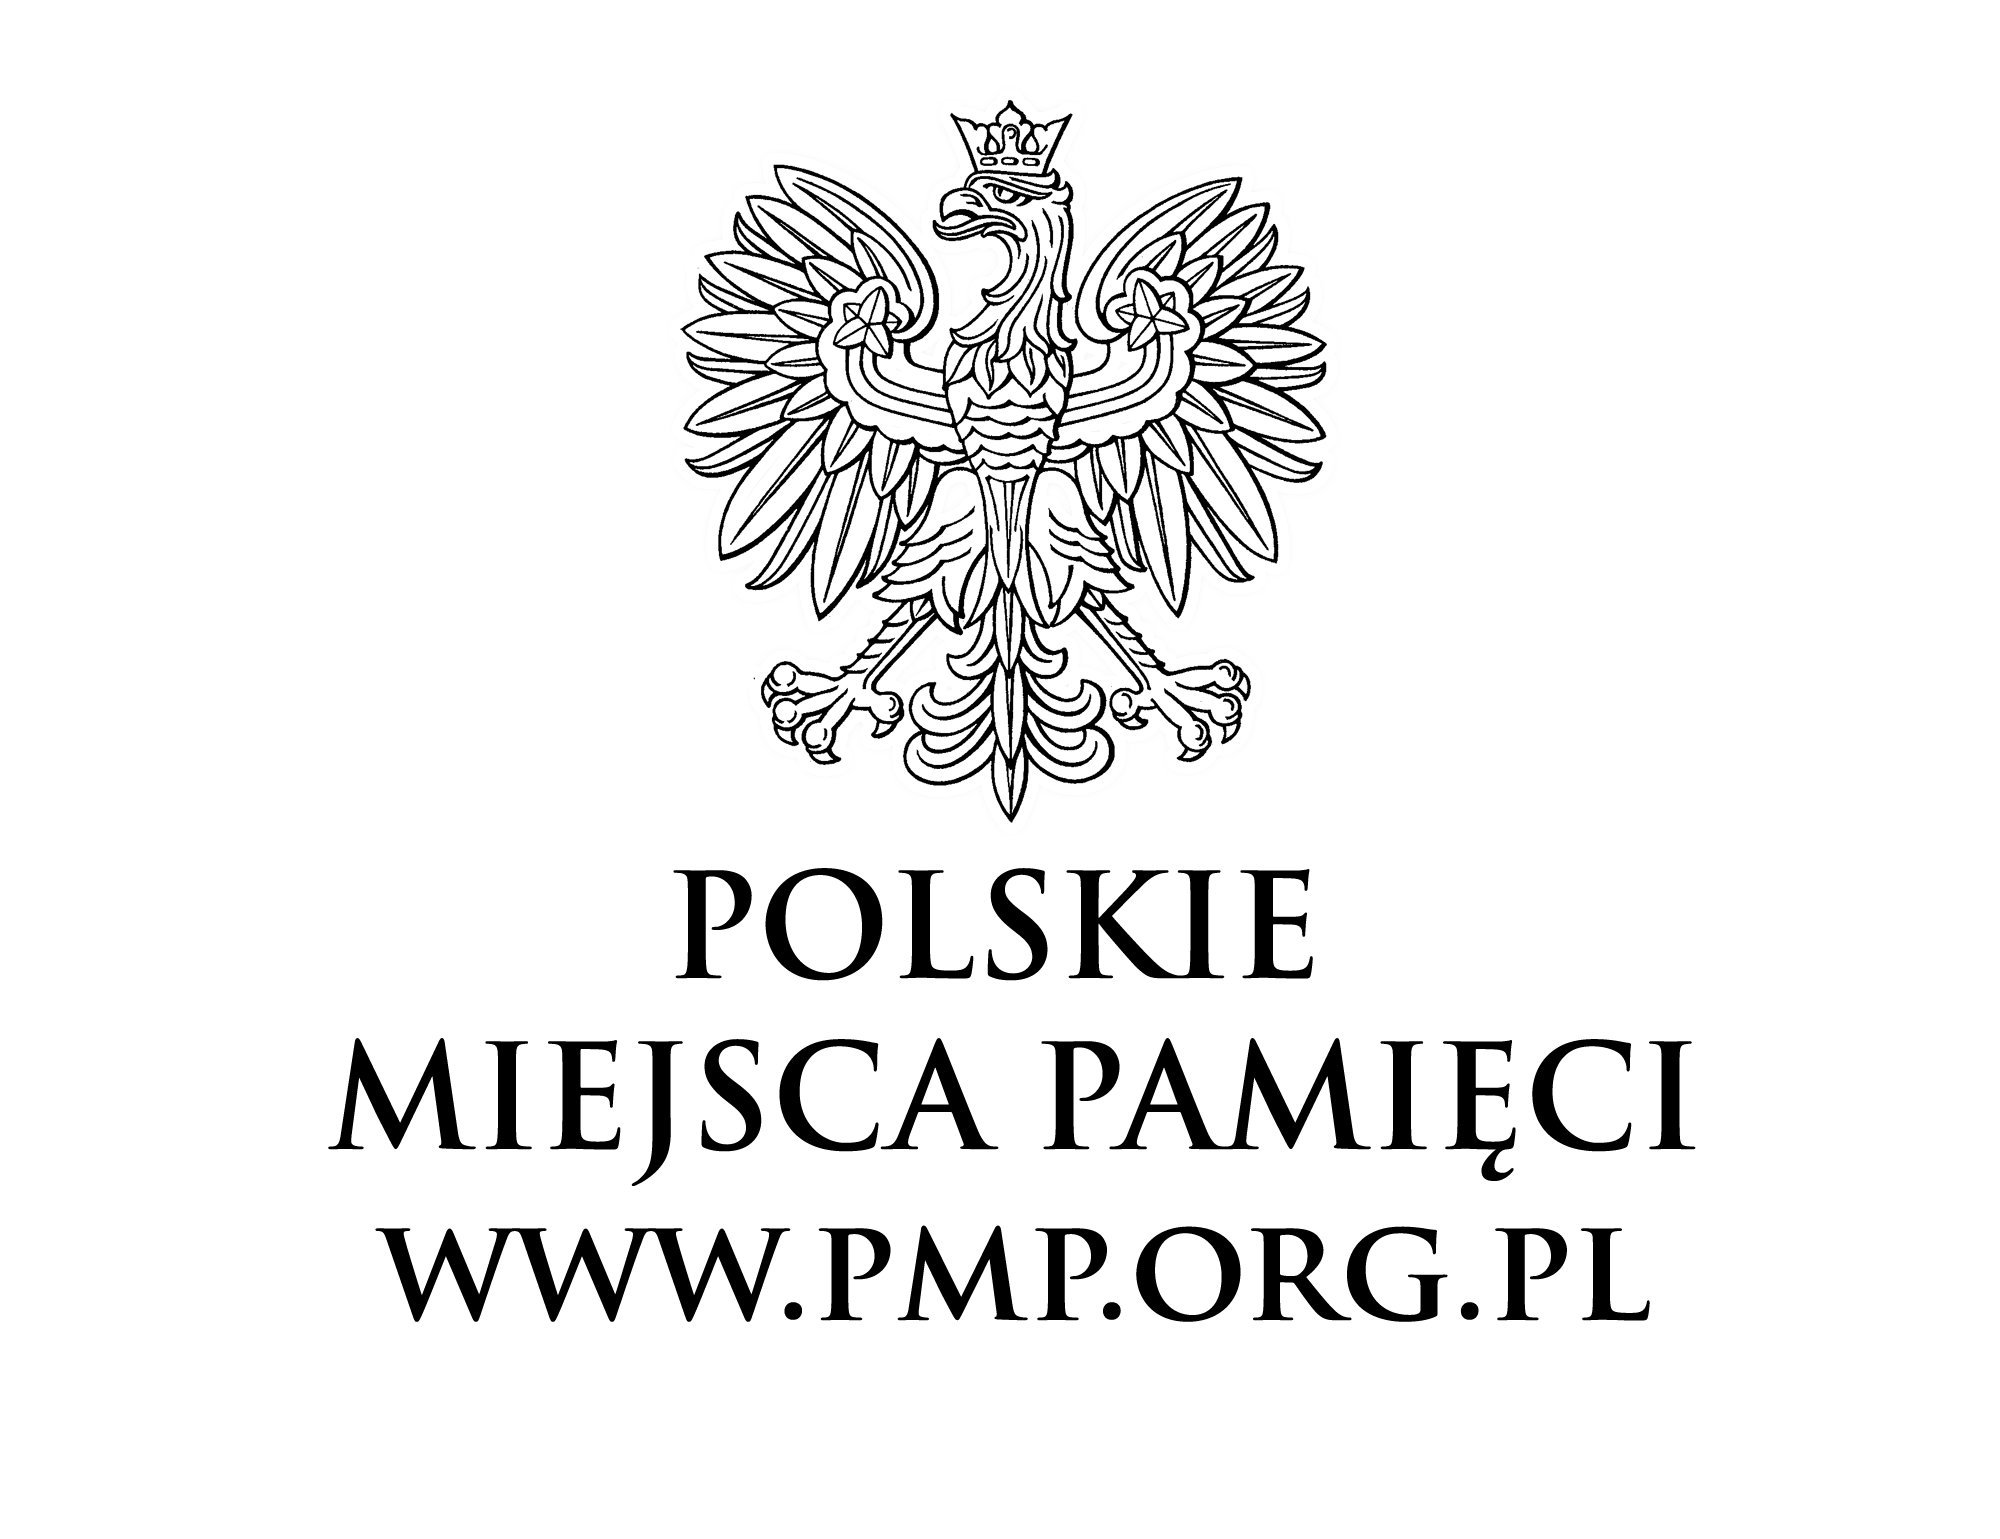 Visit Polskie Miejsca Pamięci Profile